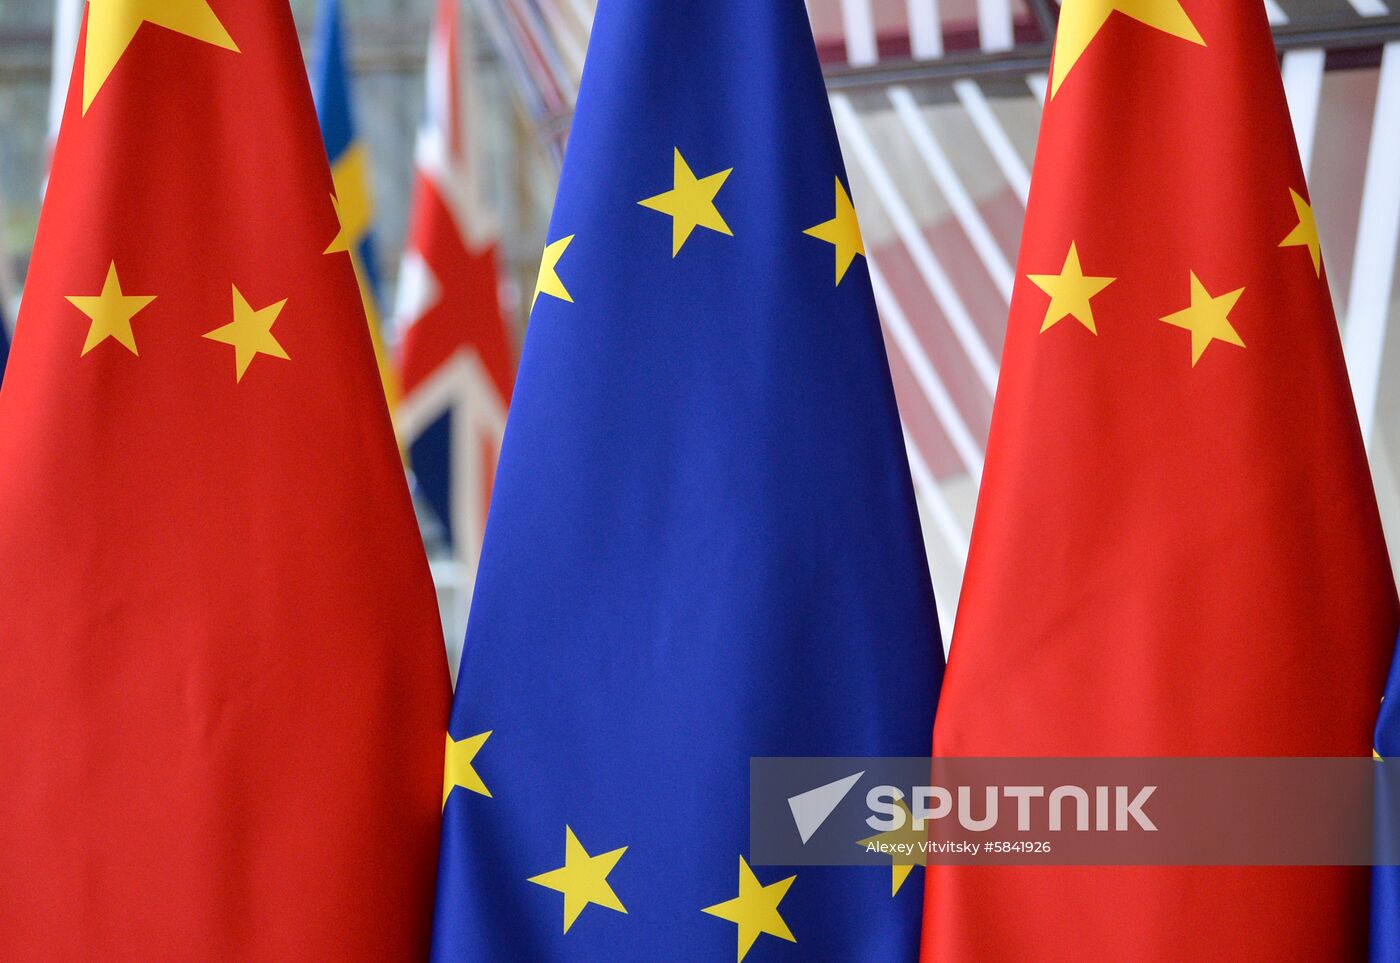 Belgium EU China